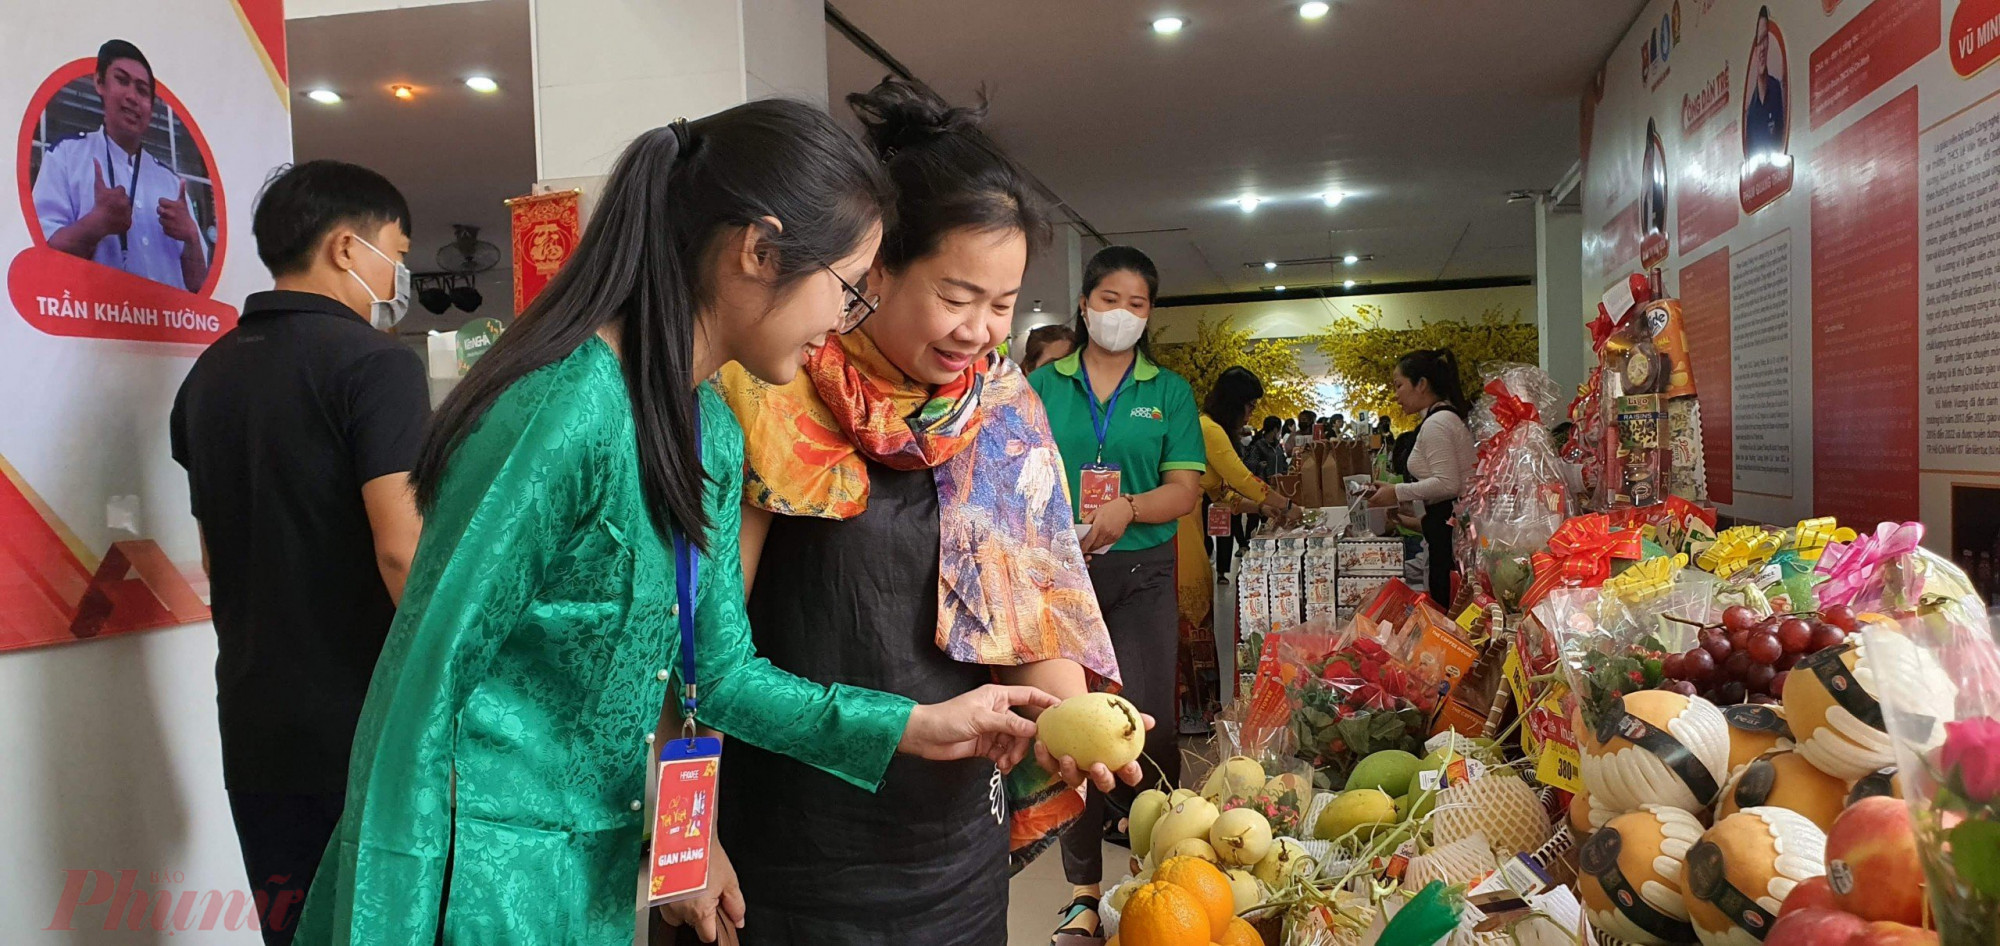 Chợ Tết Việt được Hội Nữ doanh nhân TPHCM tổ chức định kỳ hàng năm